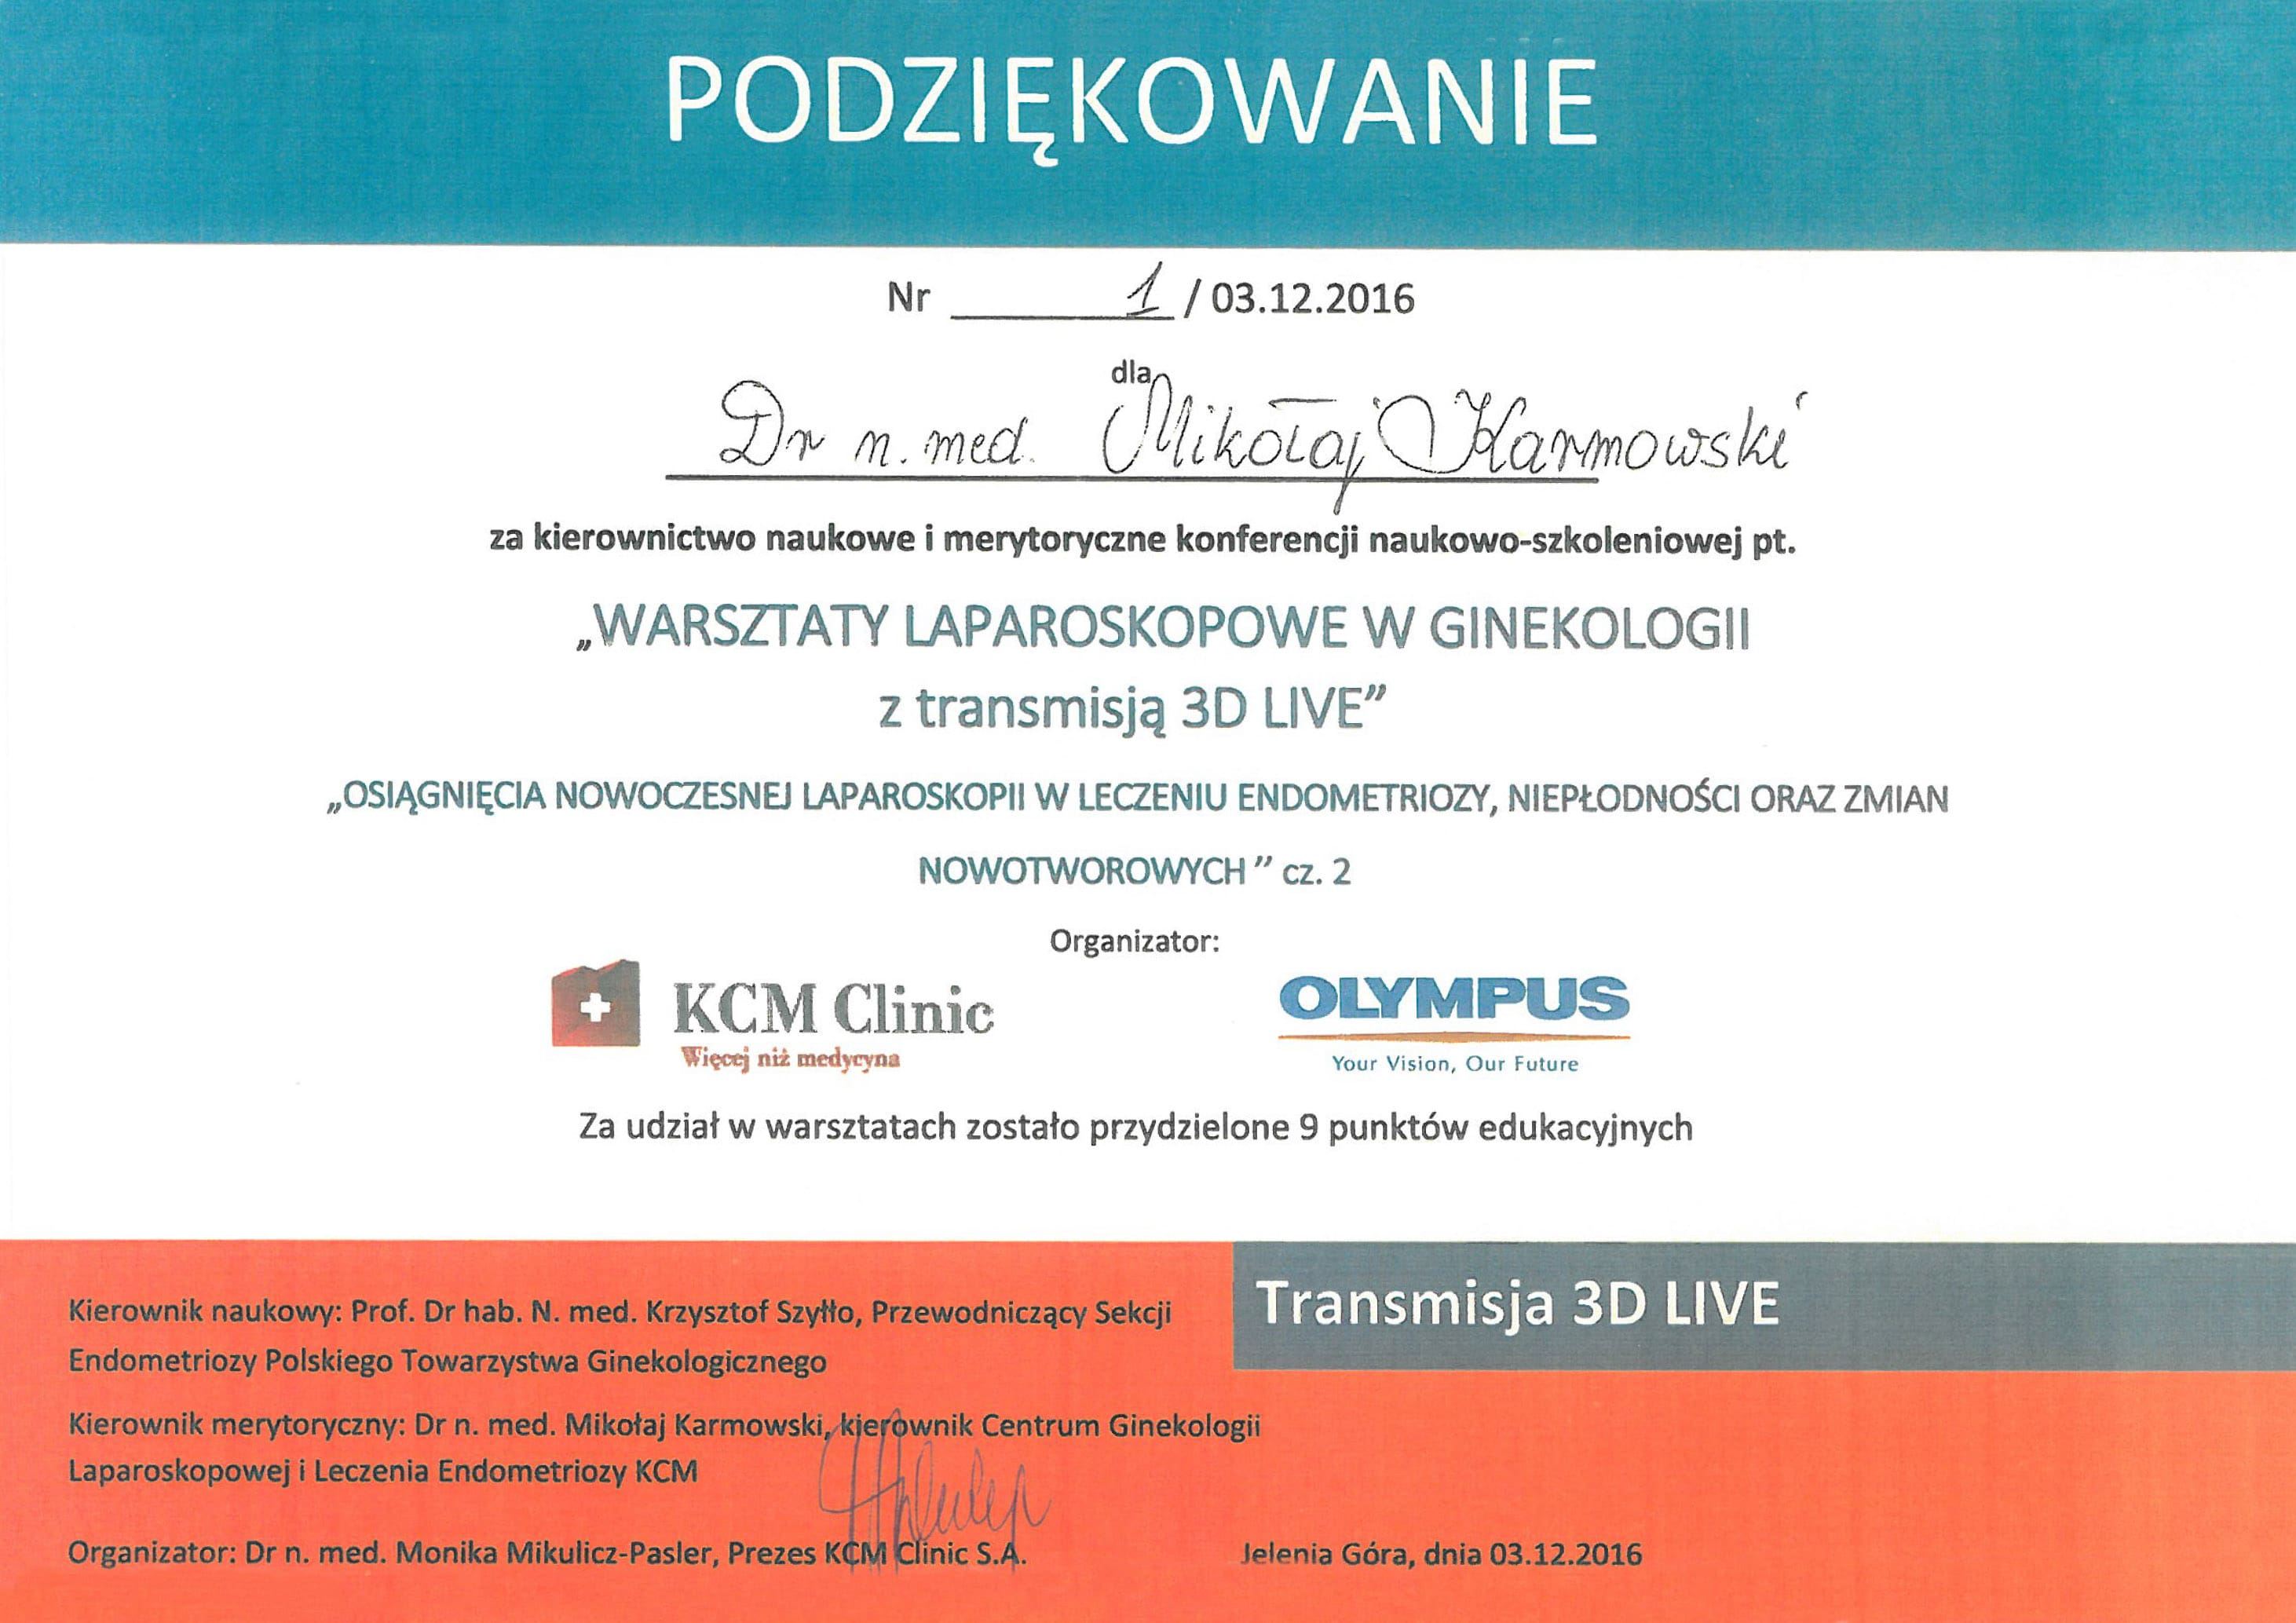 Mikołaj Karmowski certyfikat warsztaty laparoskopowe w ginekologii z transmisją 3D live